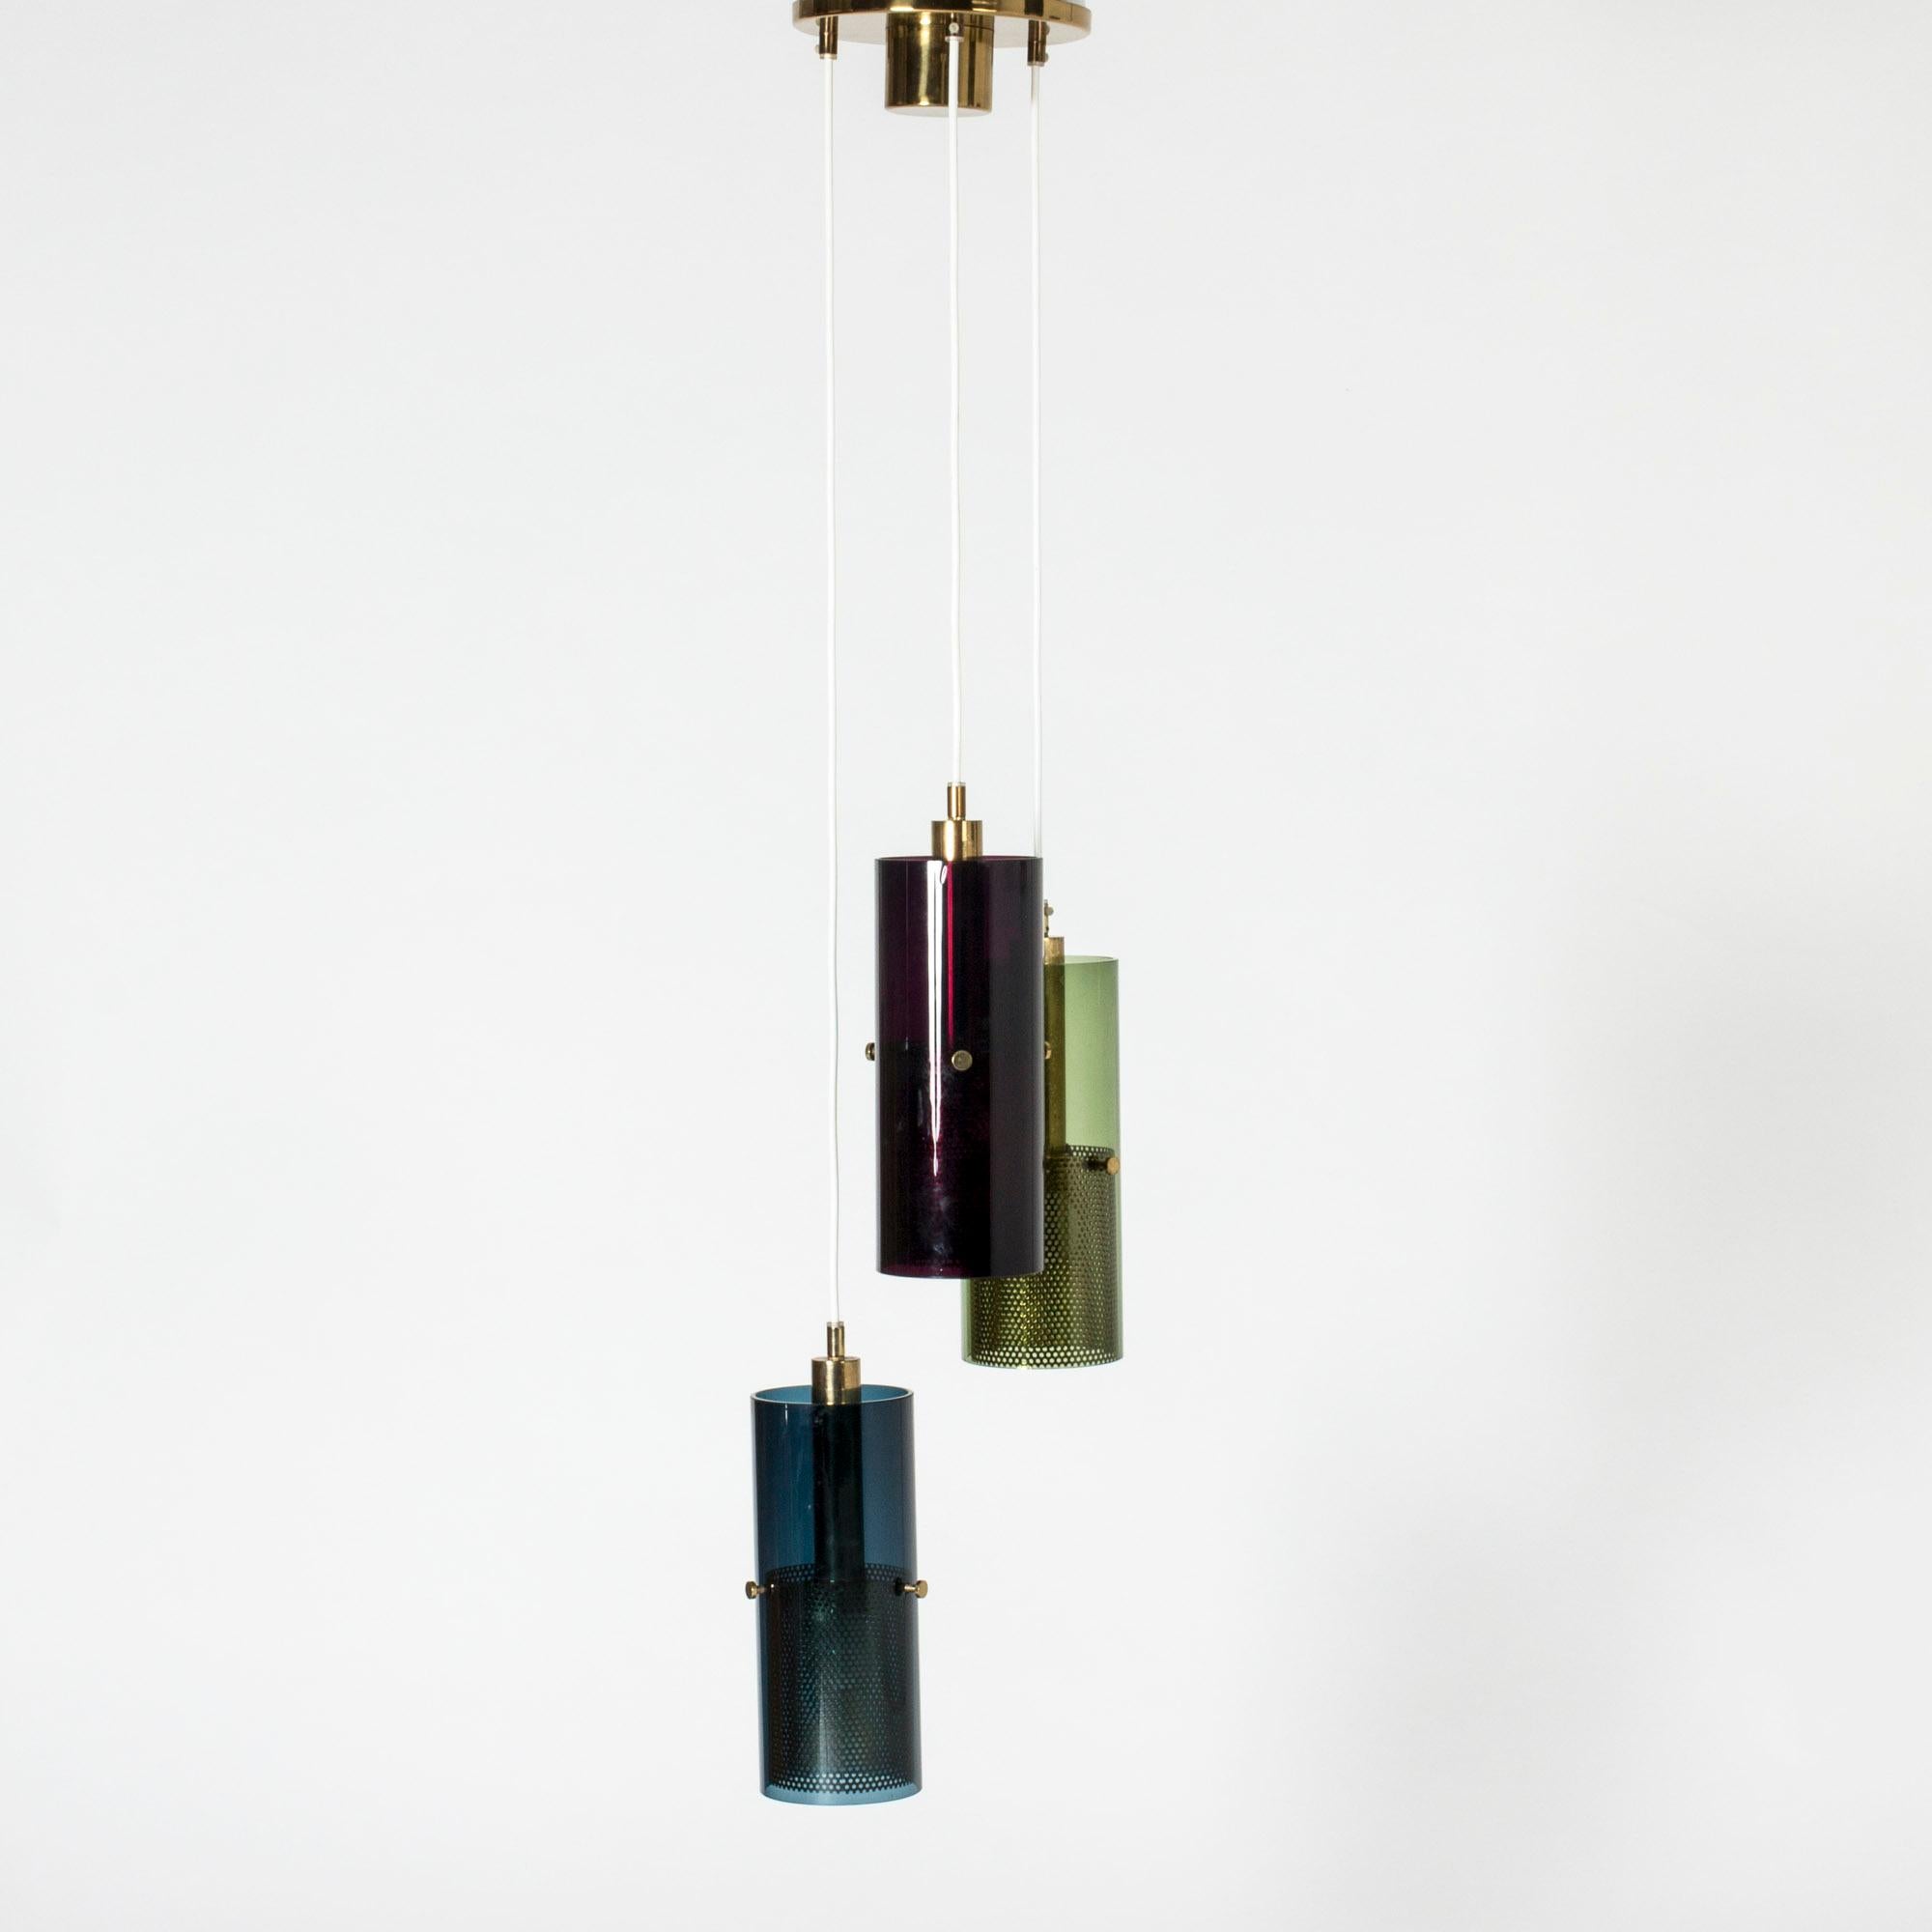 Auffällige Deckenleuchte von Hans-Agne Jakobsson mit drei zylindrischen Glasschirmen, die an einem großen Messingdeckenbecher hängen. Perforierte Messingzylinder im Inneren umschließen die Lichtquellen und lassen das rote, blaue und grüne Glas in